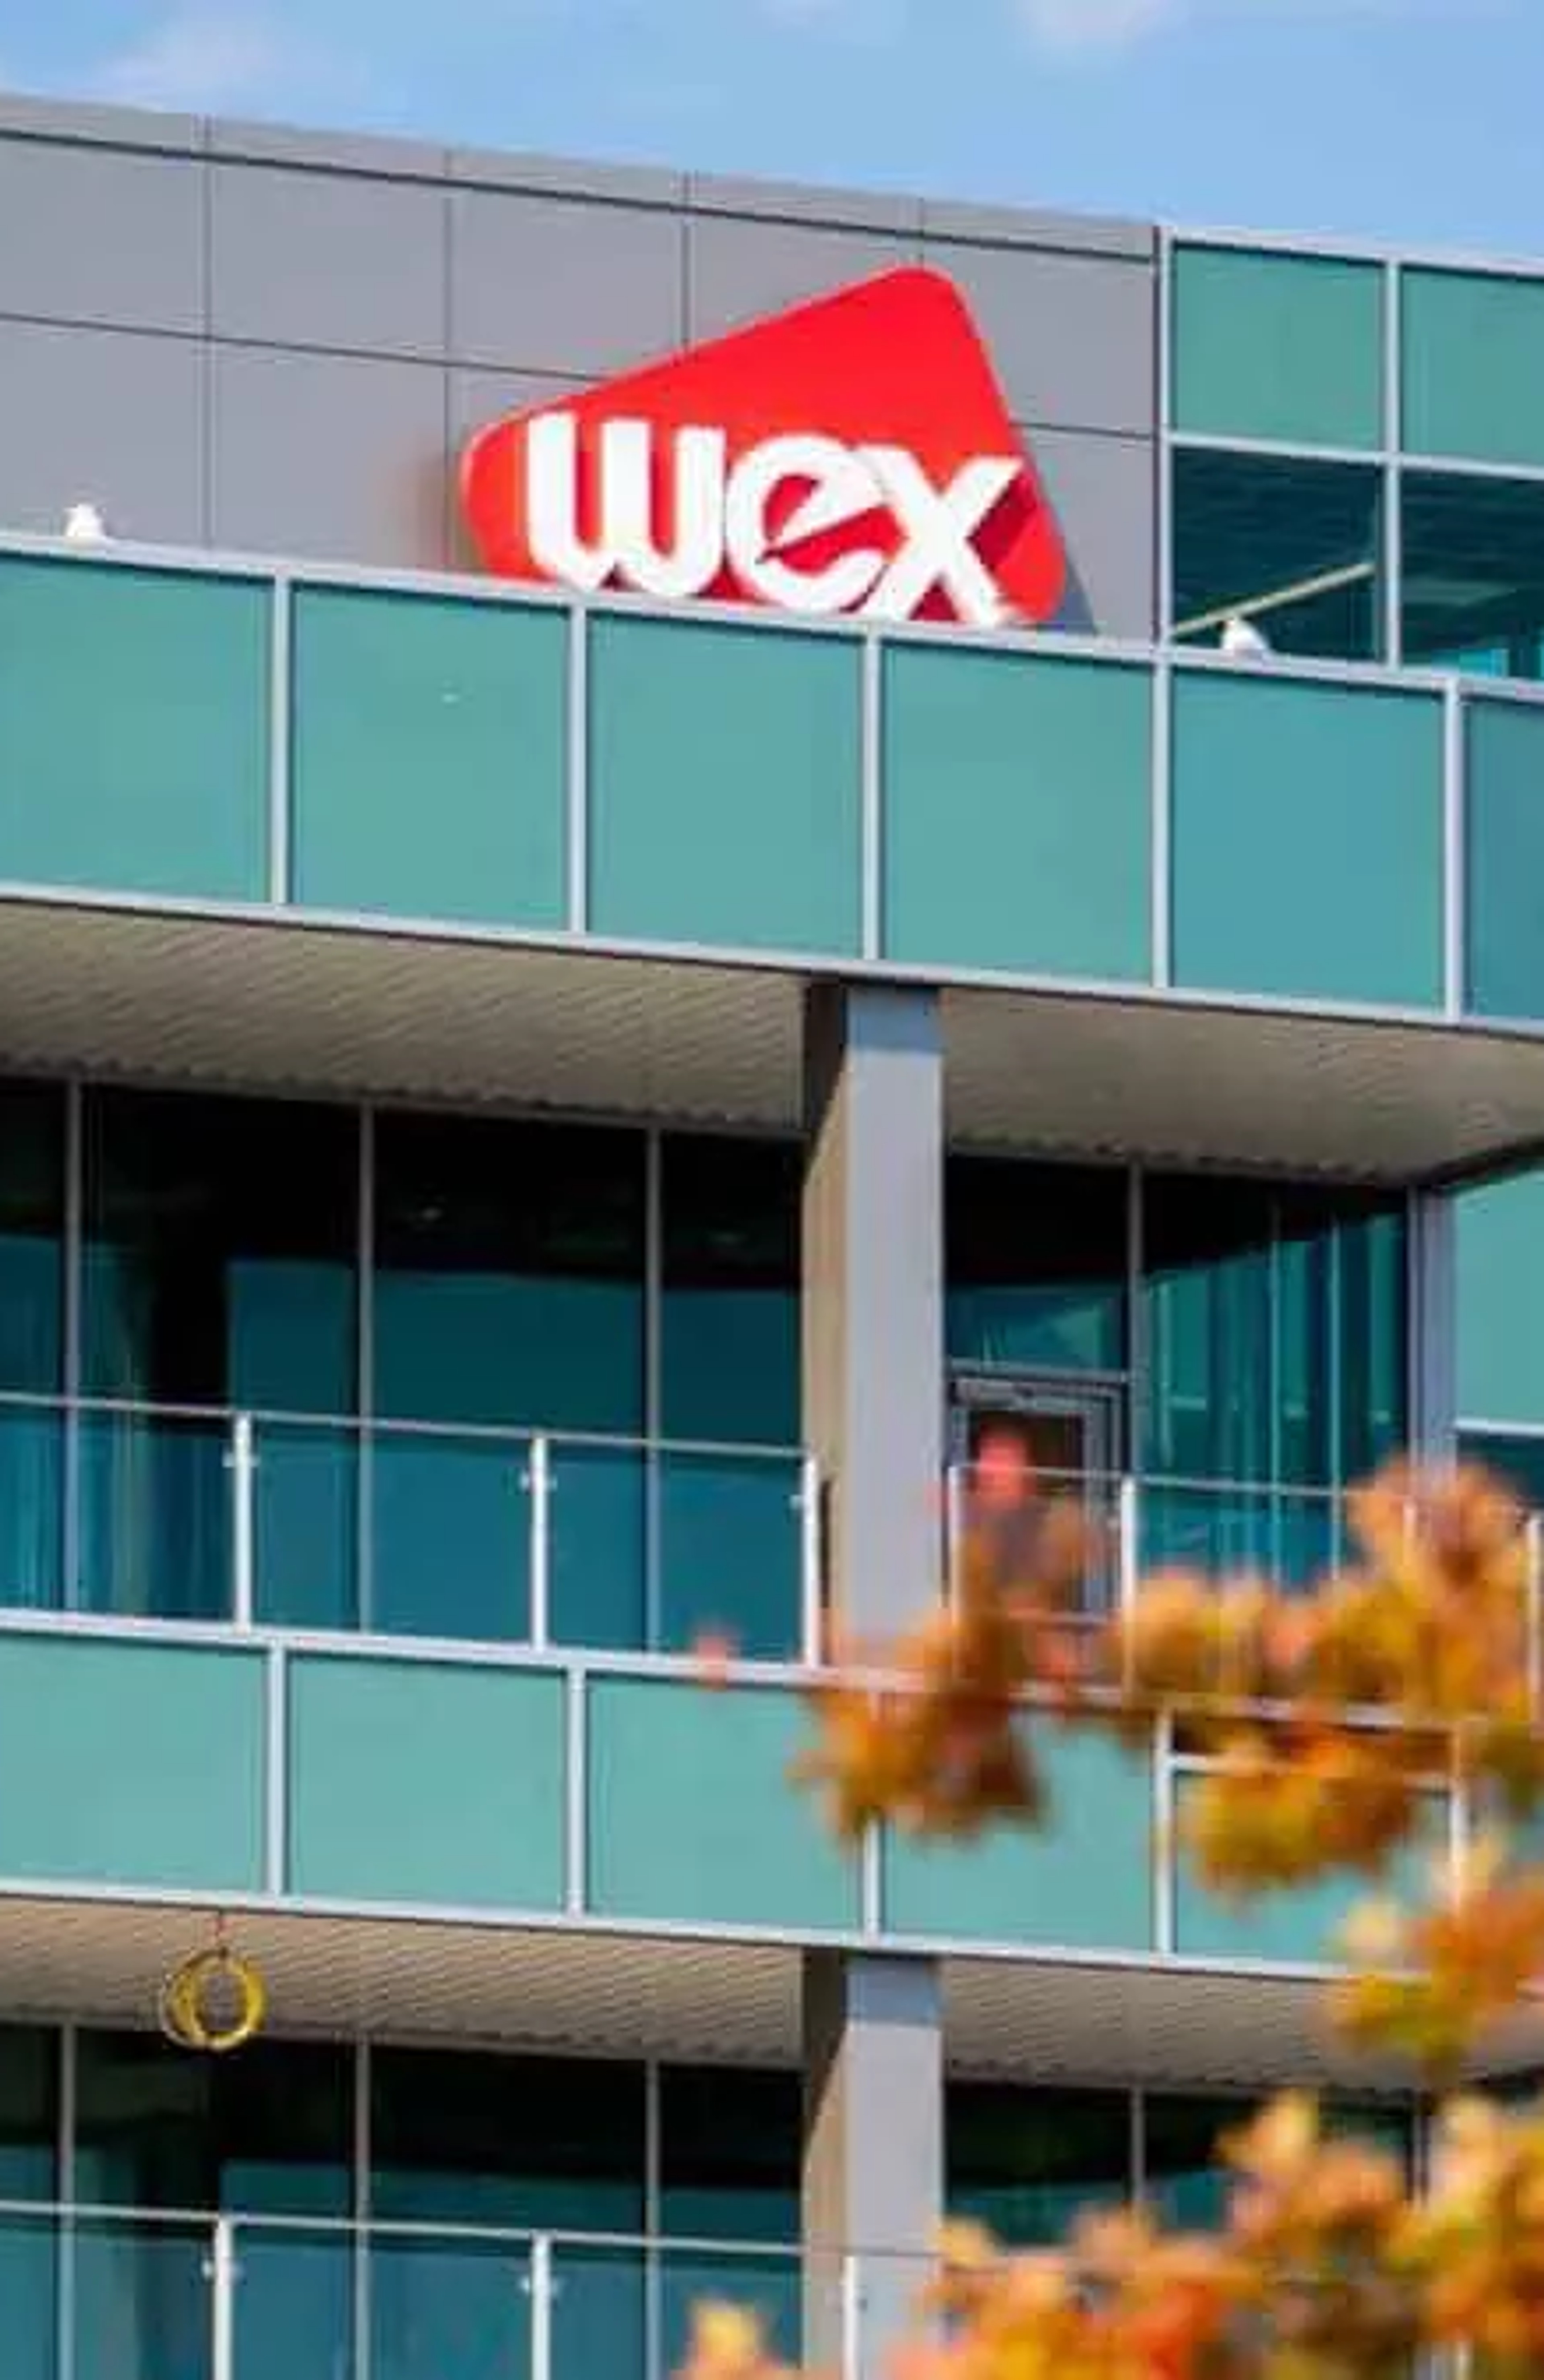 WEX Headquarters